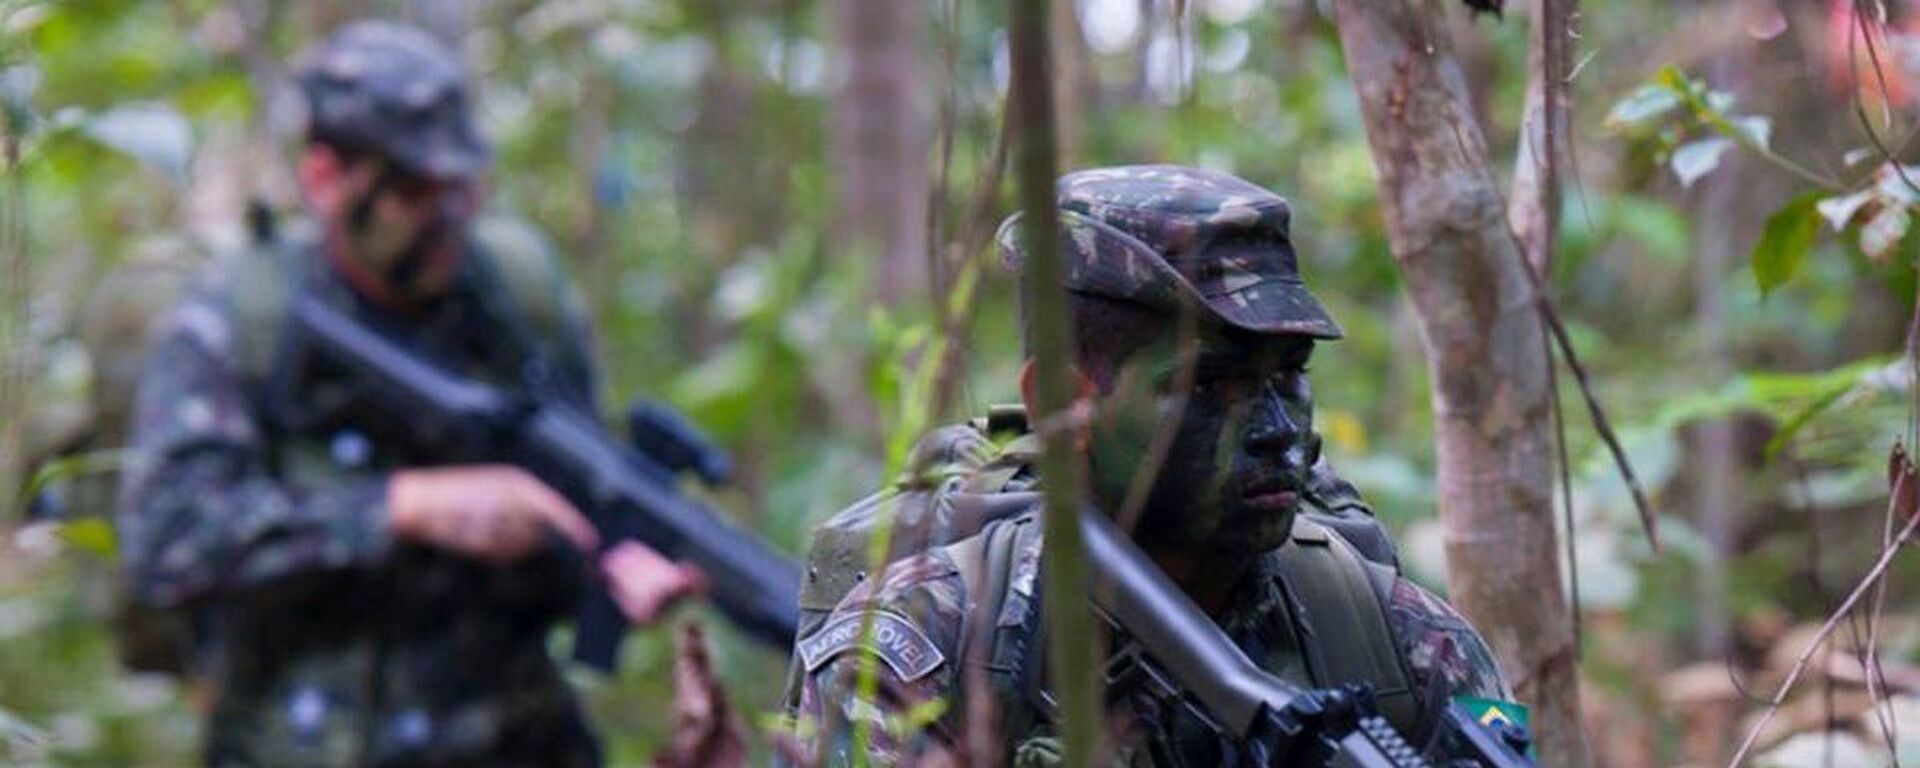 Na Amazônia, militares dos EUA iniciam treinamentos em conjunto com o Exército  Brasileiro, Amapá